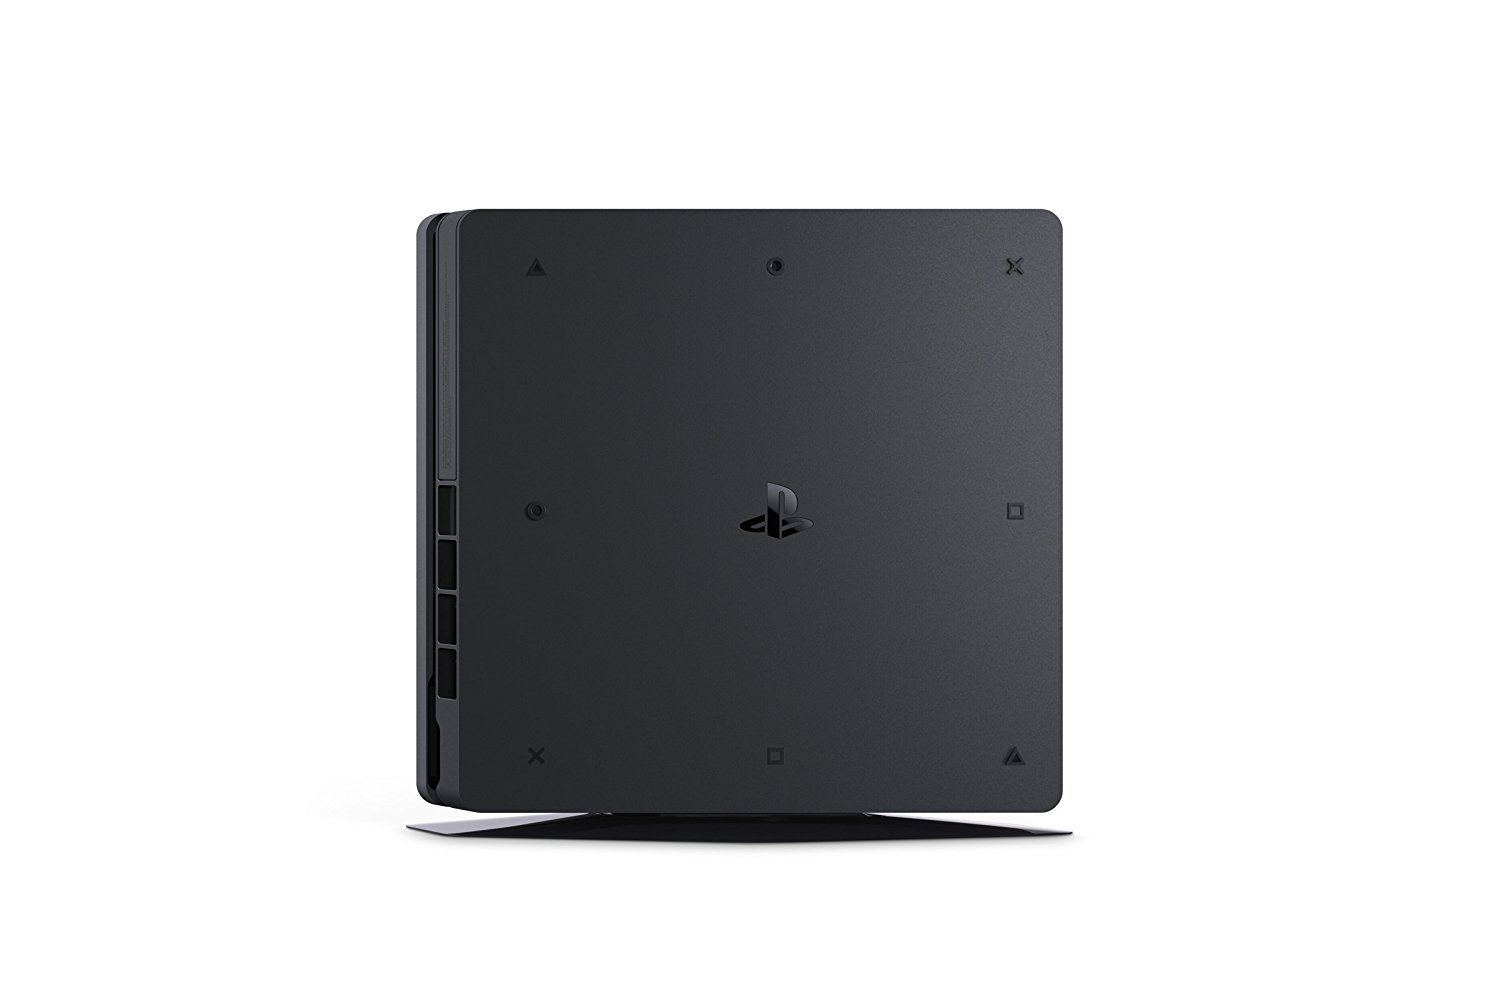 テレビ/映像機器 その他 PlayStation 4 CUH-2200 Series 1TB HDD (Jet Black)